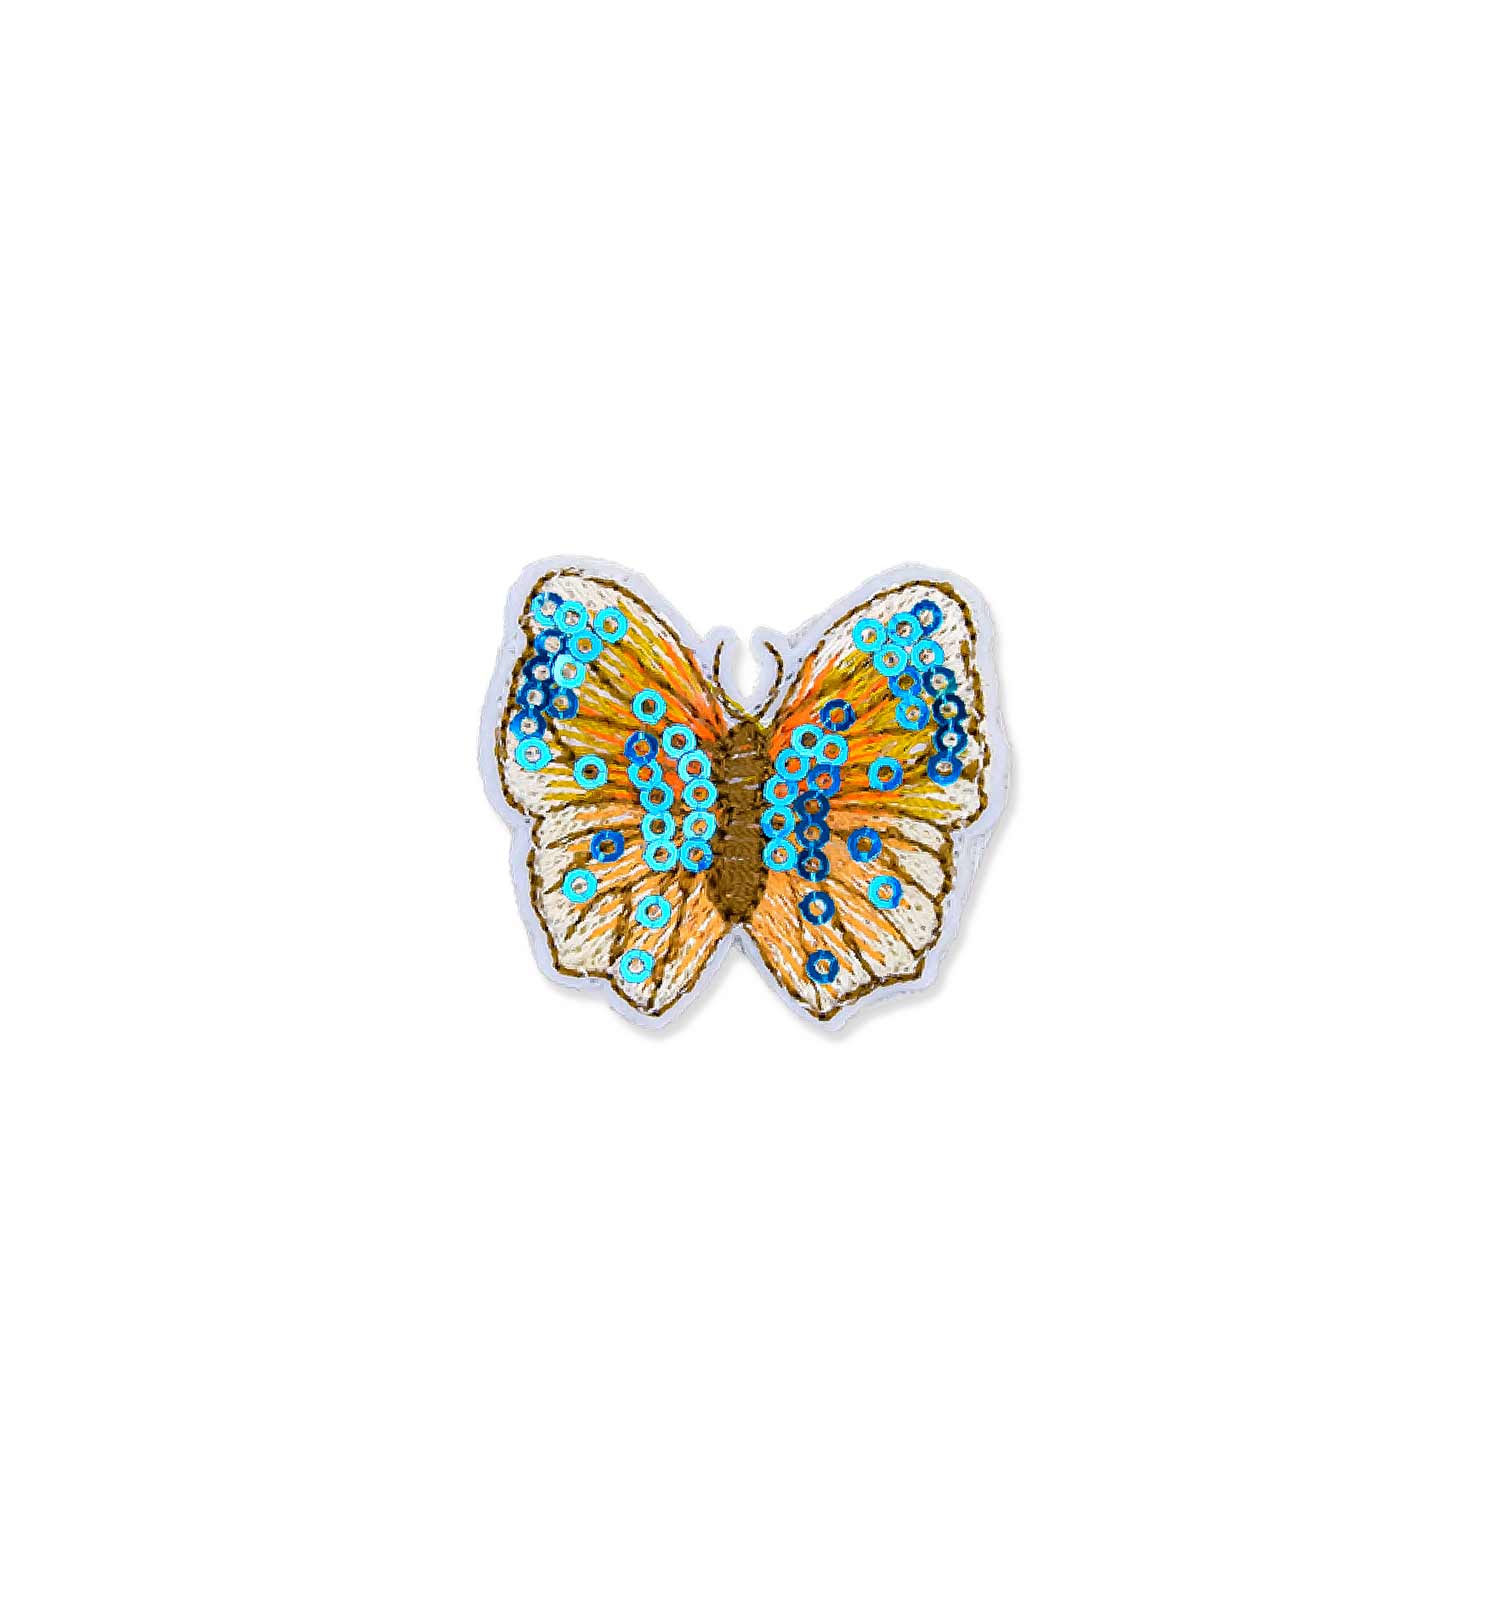 Schmetterling 1 Stk. assortiert, 8 cm blau Folie mit Clip kaufen